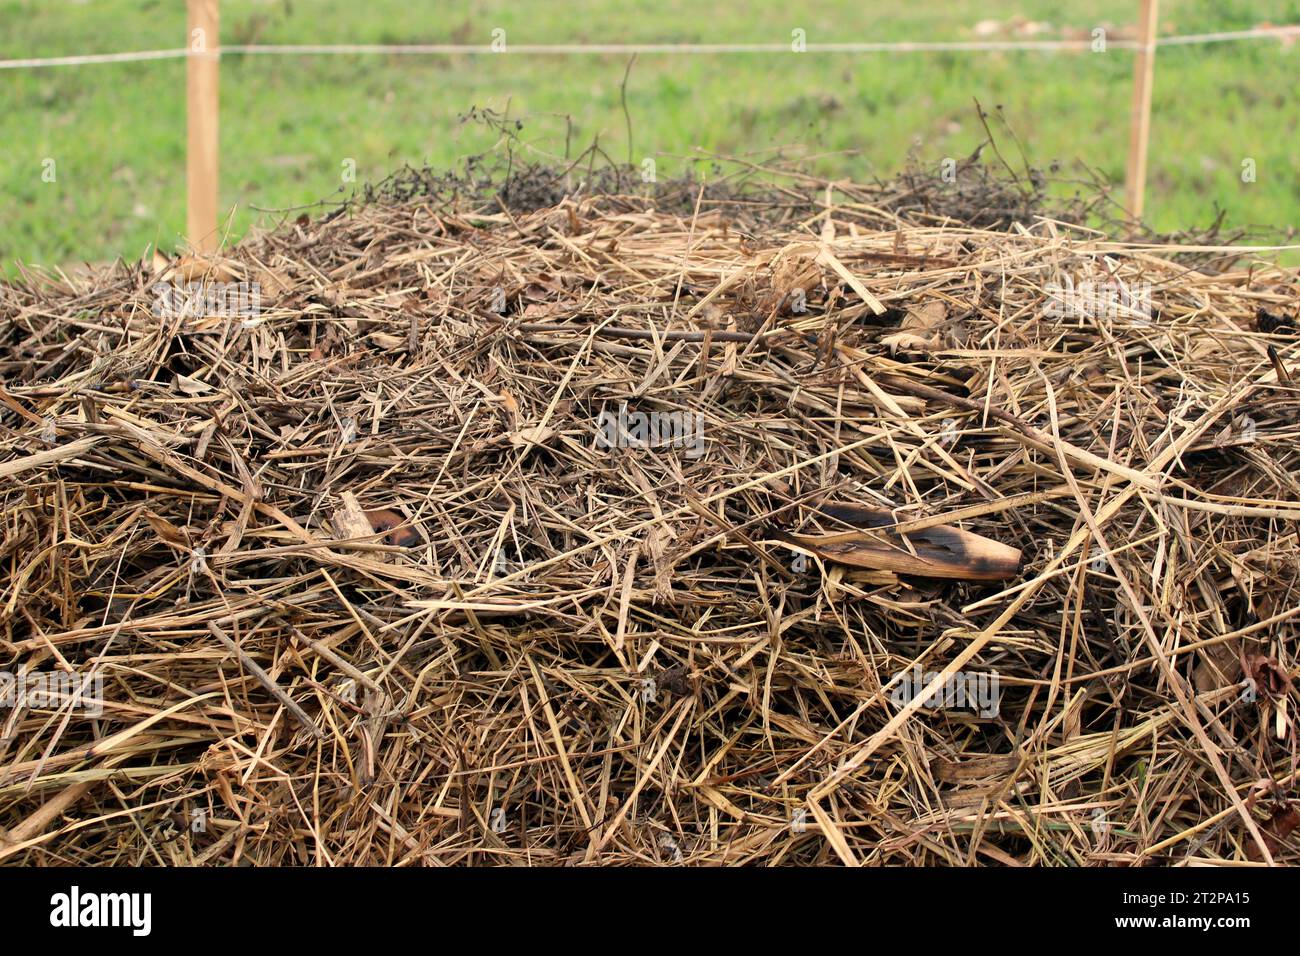 Vue rapprochée de la couche de paille, ou d'herbe sèche, d'un andain de compost, utilisée pour couvrir les matières organiques en décomposition au cours du processus de compostage. Banque D'Images